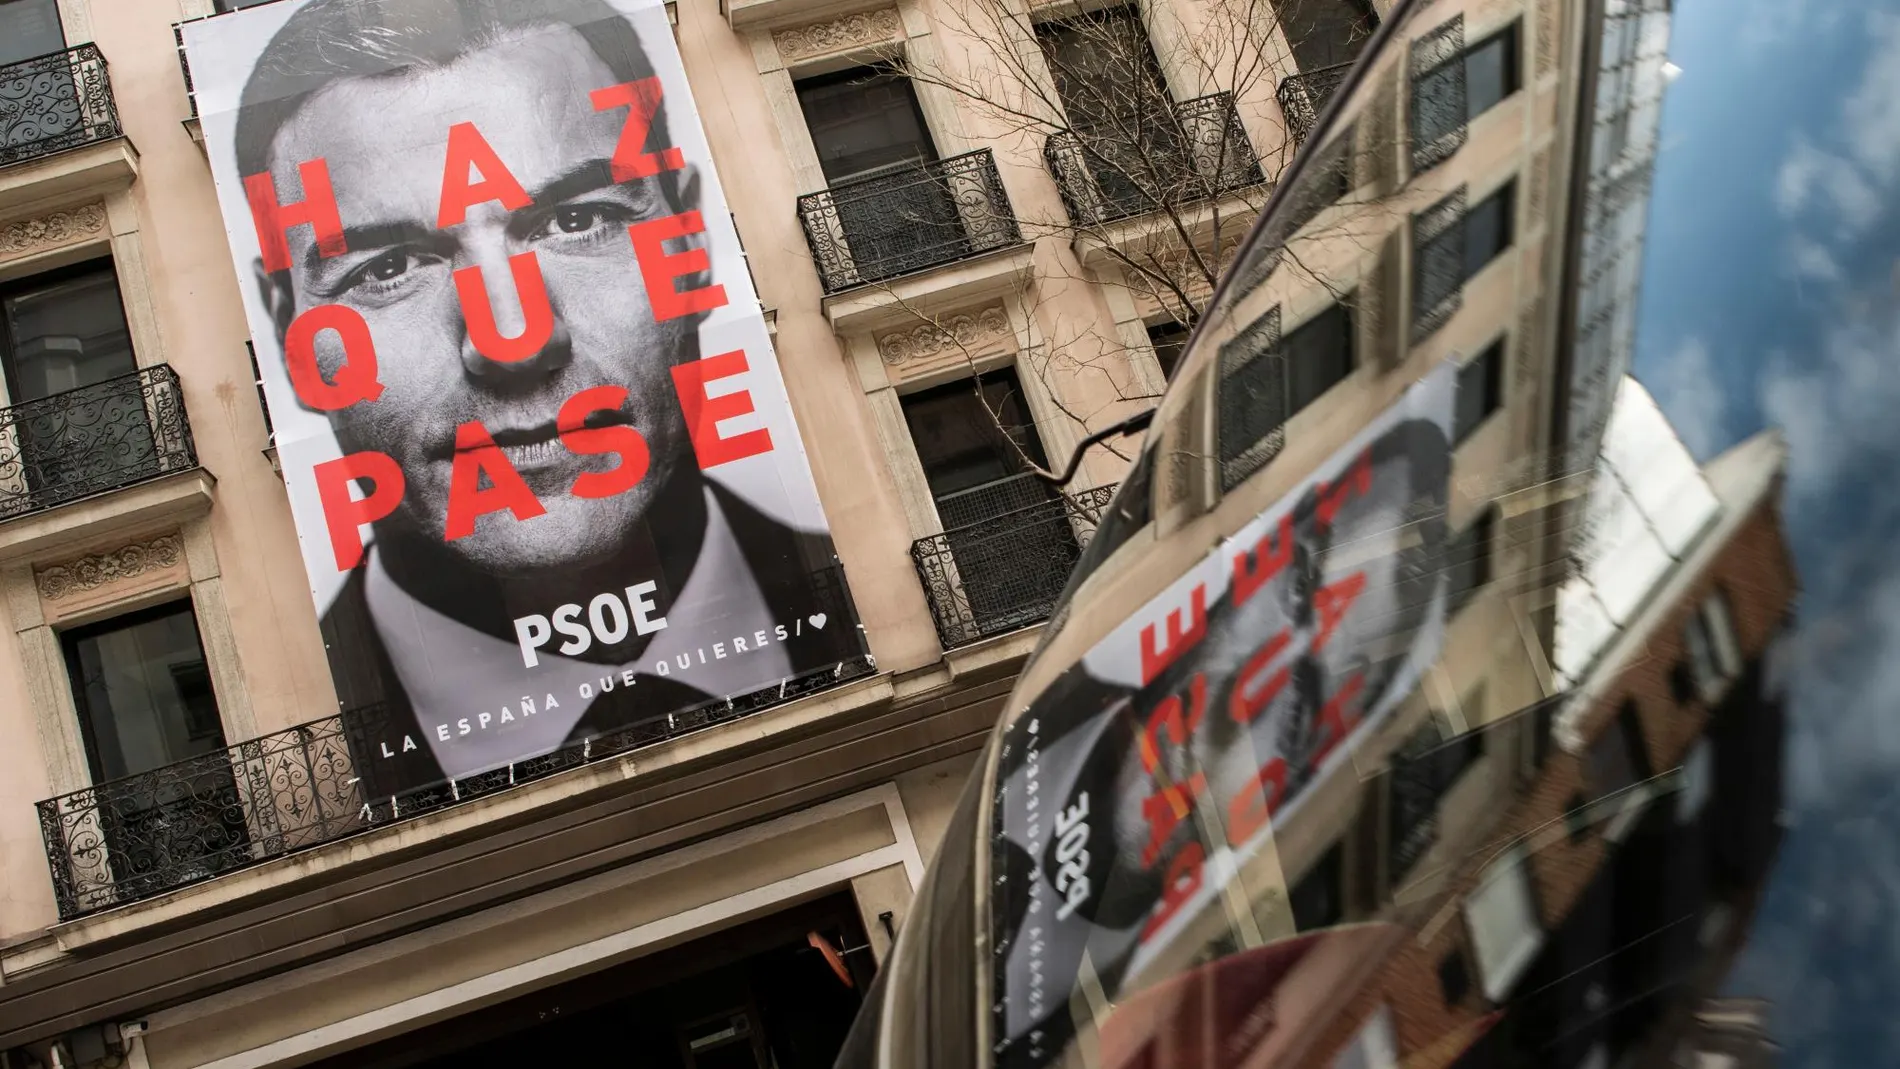 Carteles de la campaña del PSOE en Ferraz, con el lema "Haz que pase"y Pedro Sánchez como imagen principal / Foto: David Jar